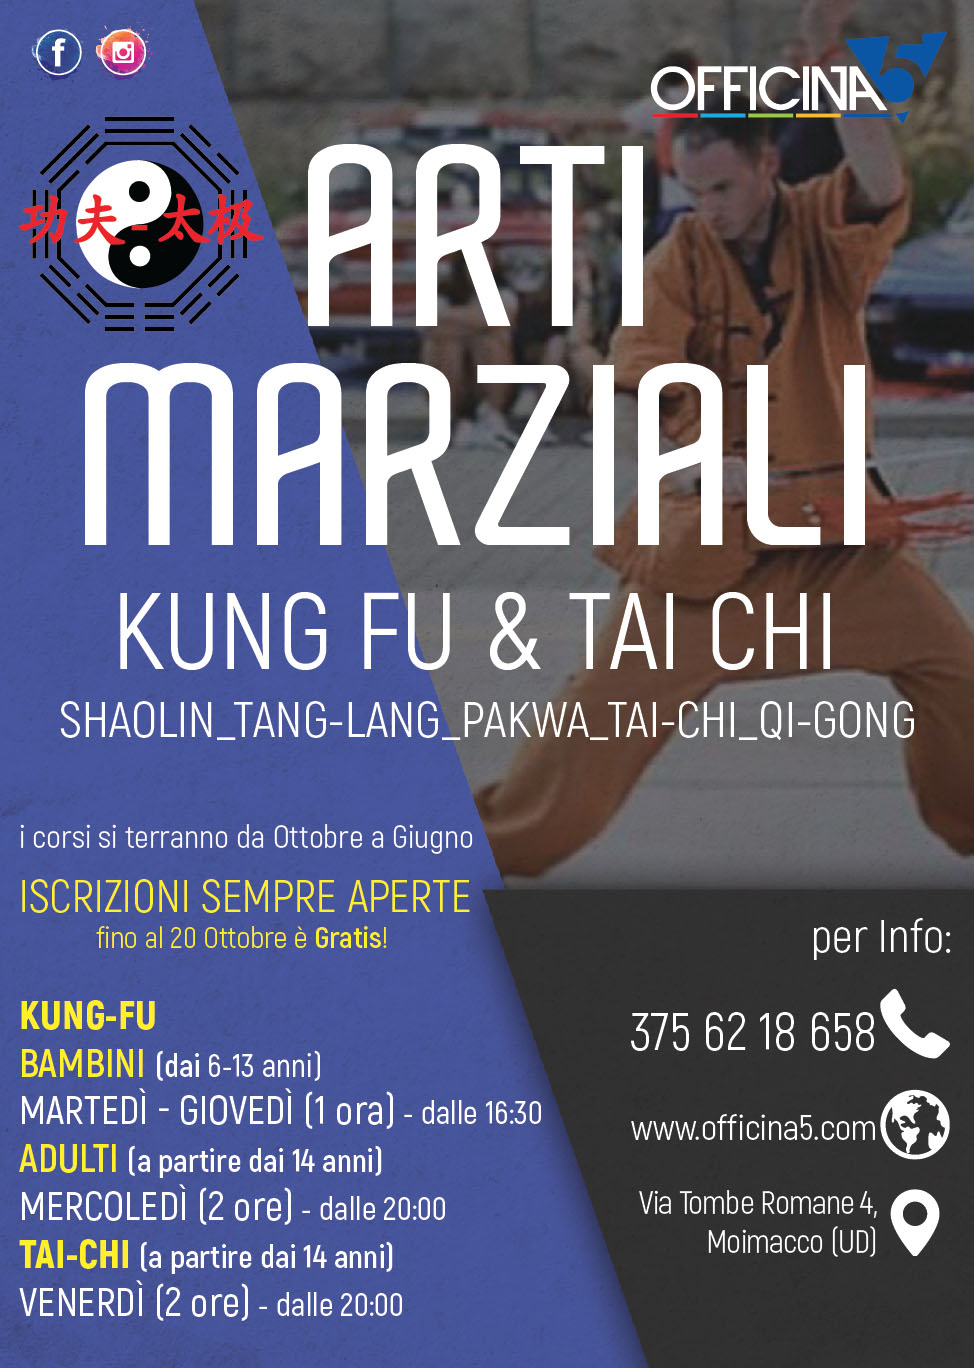 Iscrizioni aperte per i corsi di Arti Marziali (kung-fu e tai-chi) in palestra a Ipplis di Premariacco